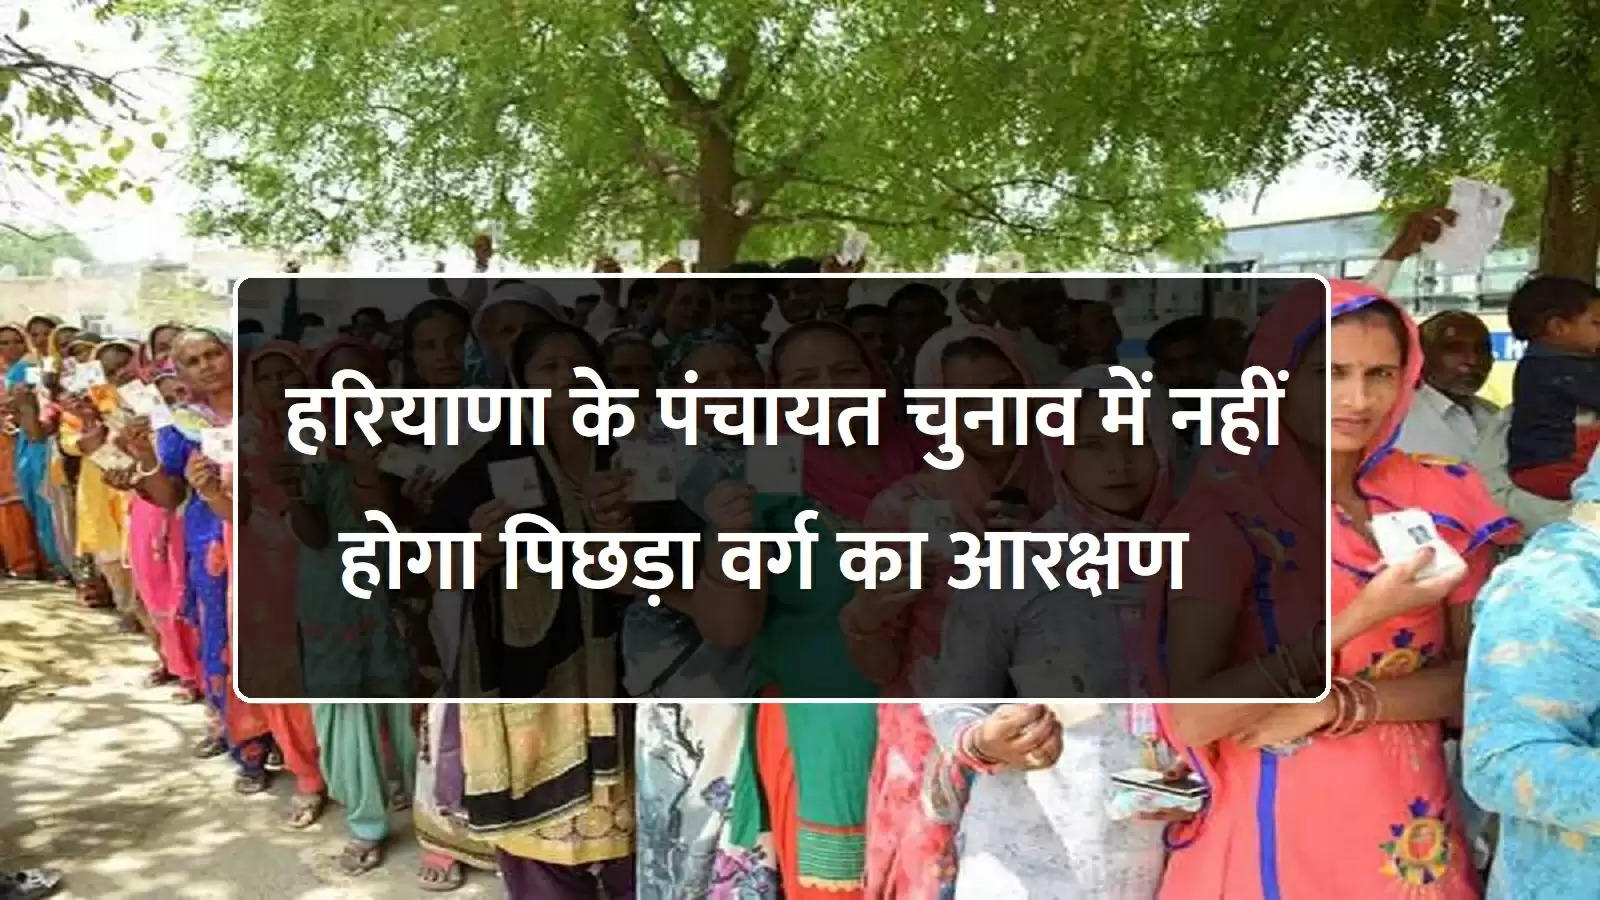 Haryana Panchayat Election: हरियाणा के पंचायत चुनाव में नहीं होगा पिछड़ा वर्ग का आरक्षण, ड्रा पर चुनाव आयोग ने लगाया ब्रेक